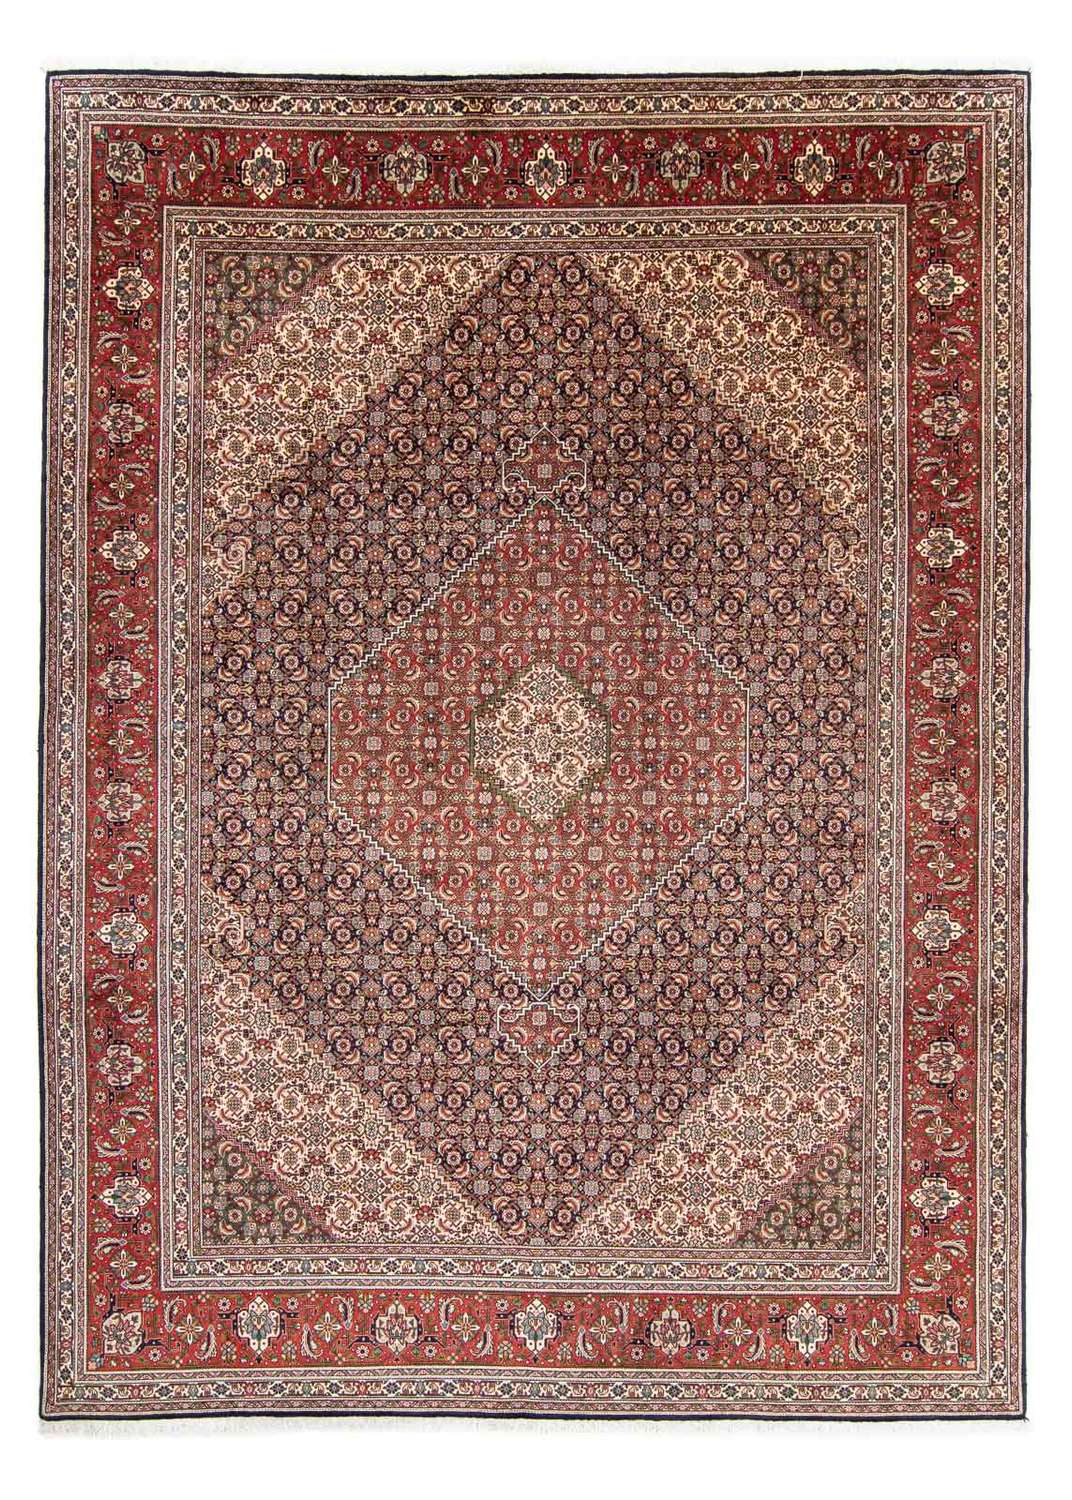 Perzisch tapijt - Tabriz - 343 x 246 cm - veelkleurig